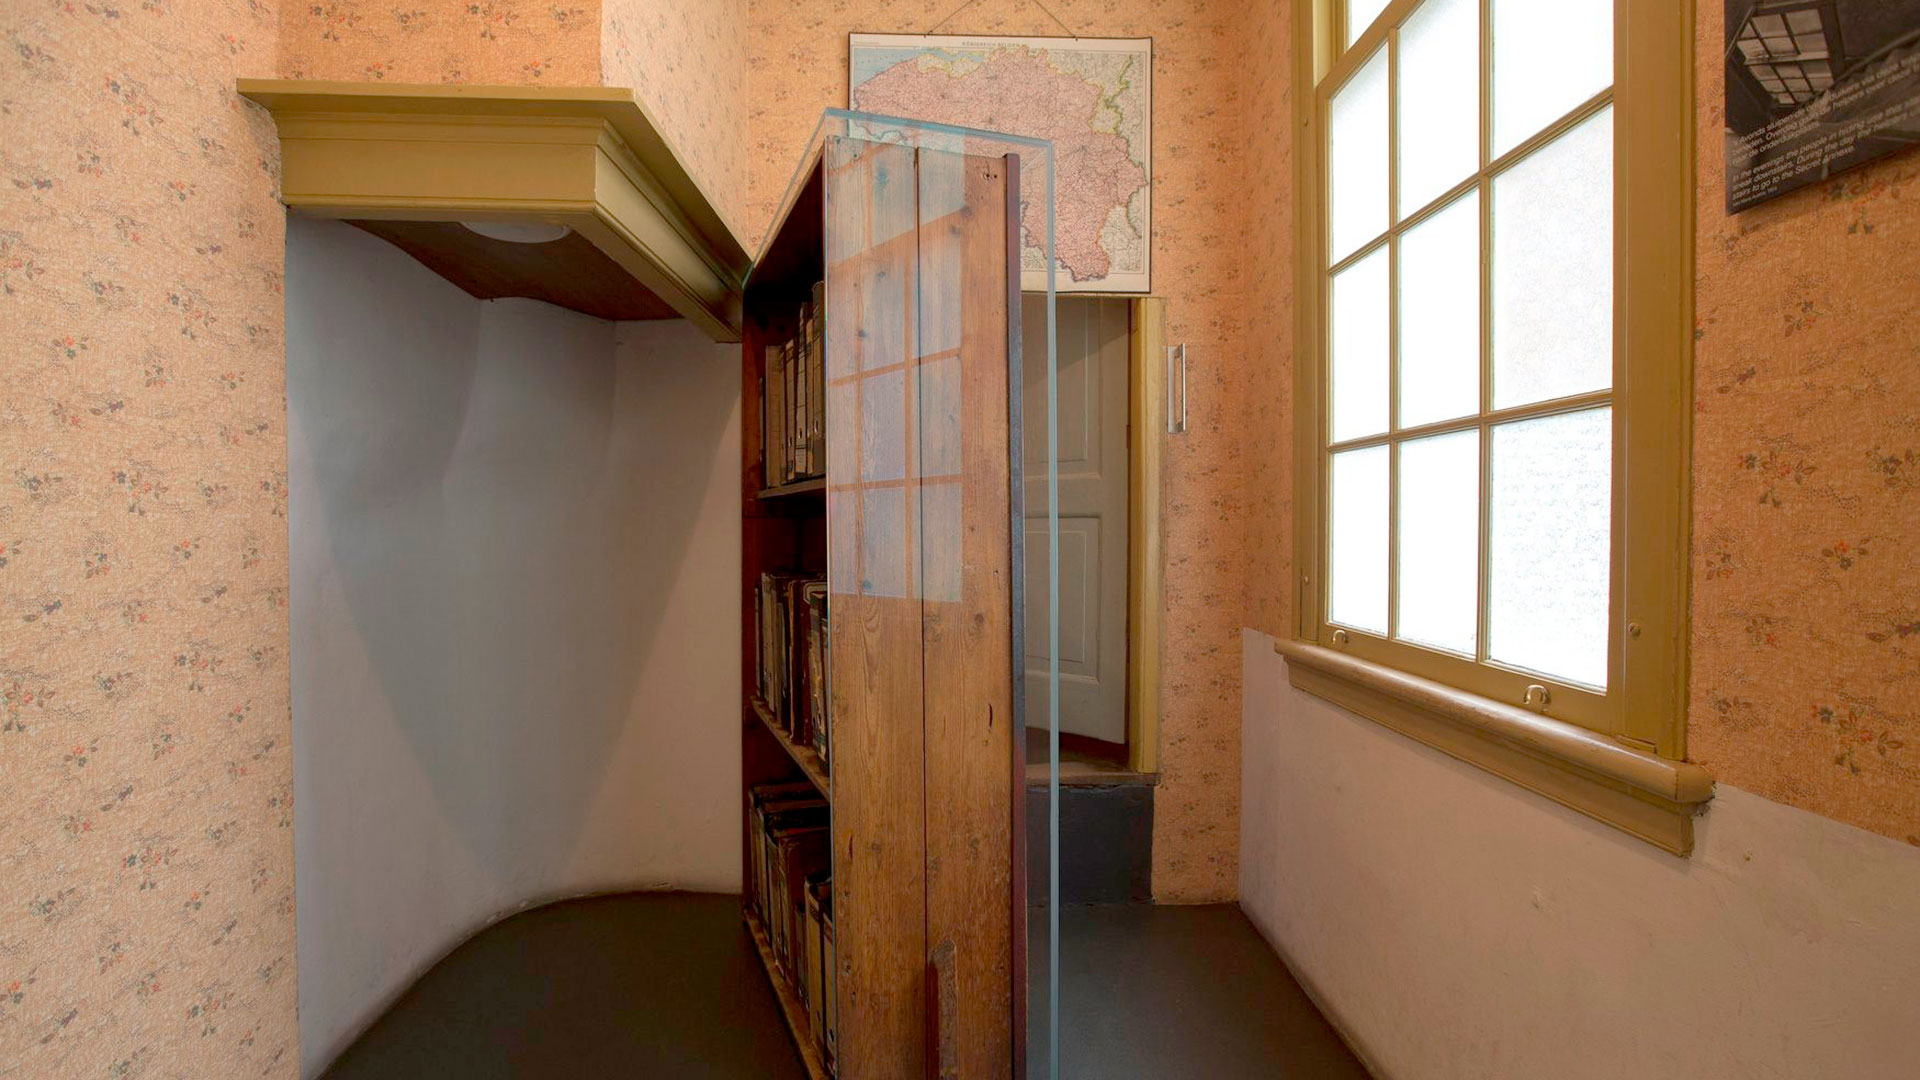 La puerta secreta que llevaba a la "casa de atrás" (Anne Frank House)